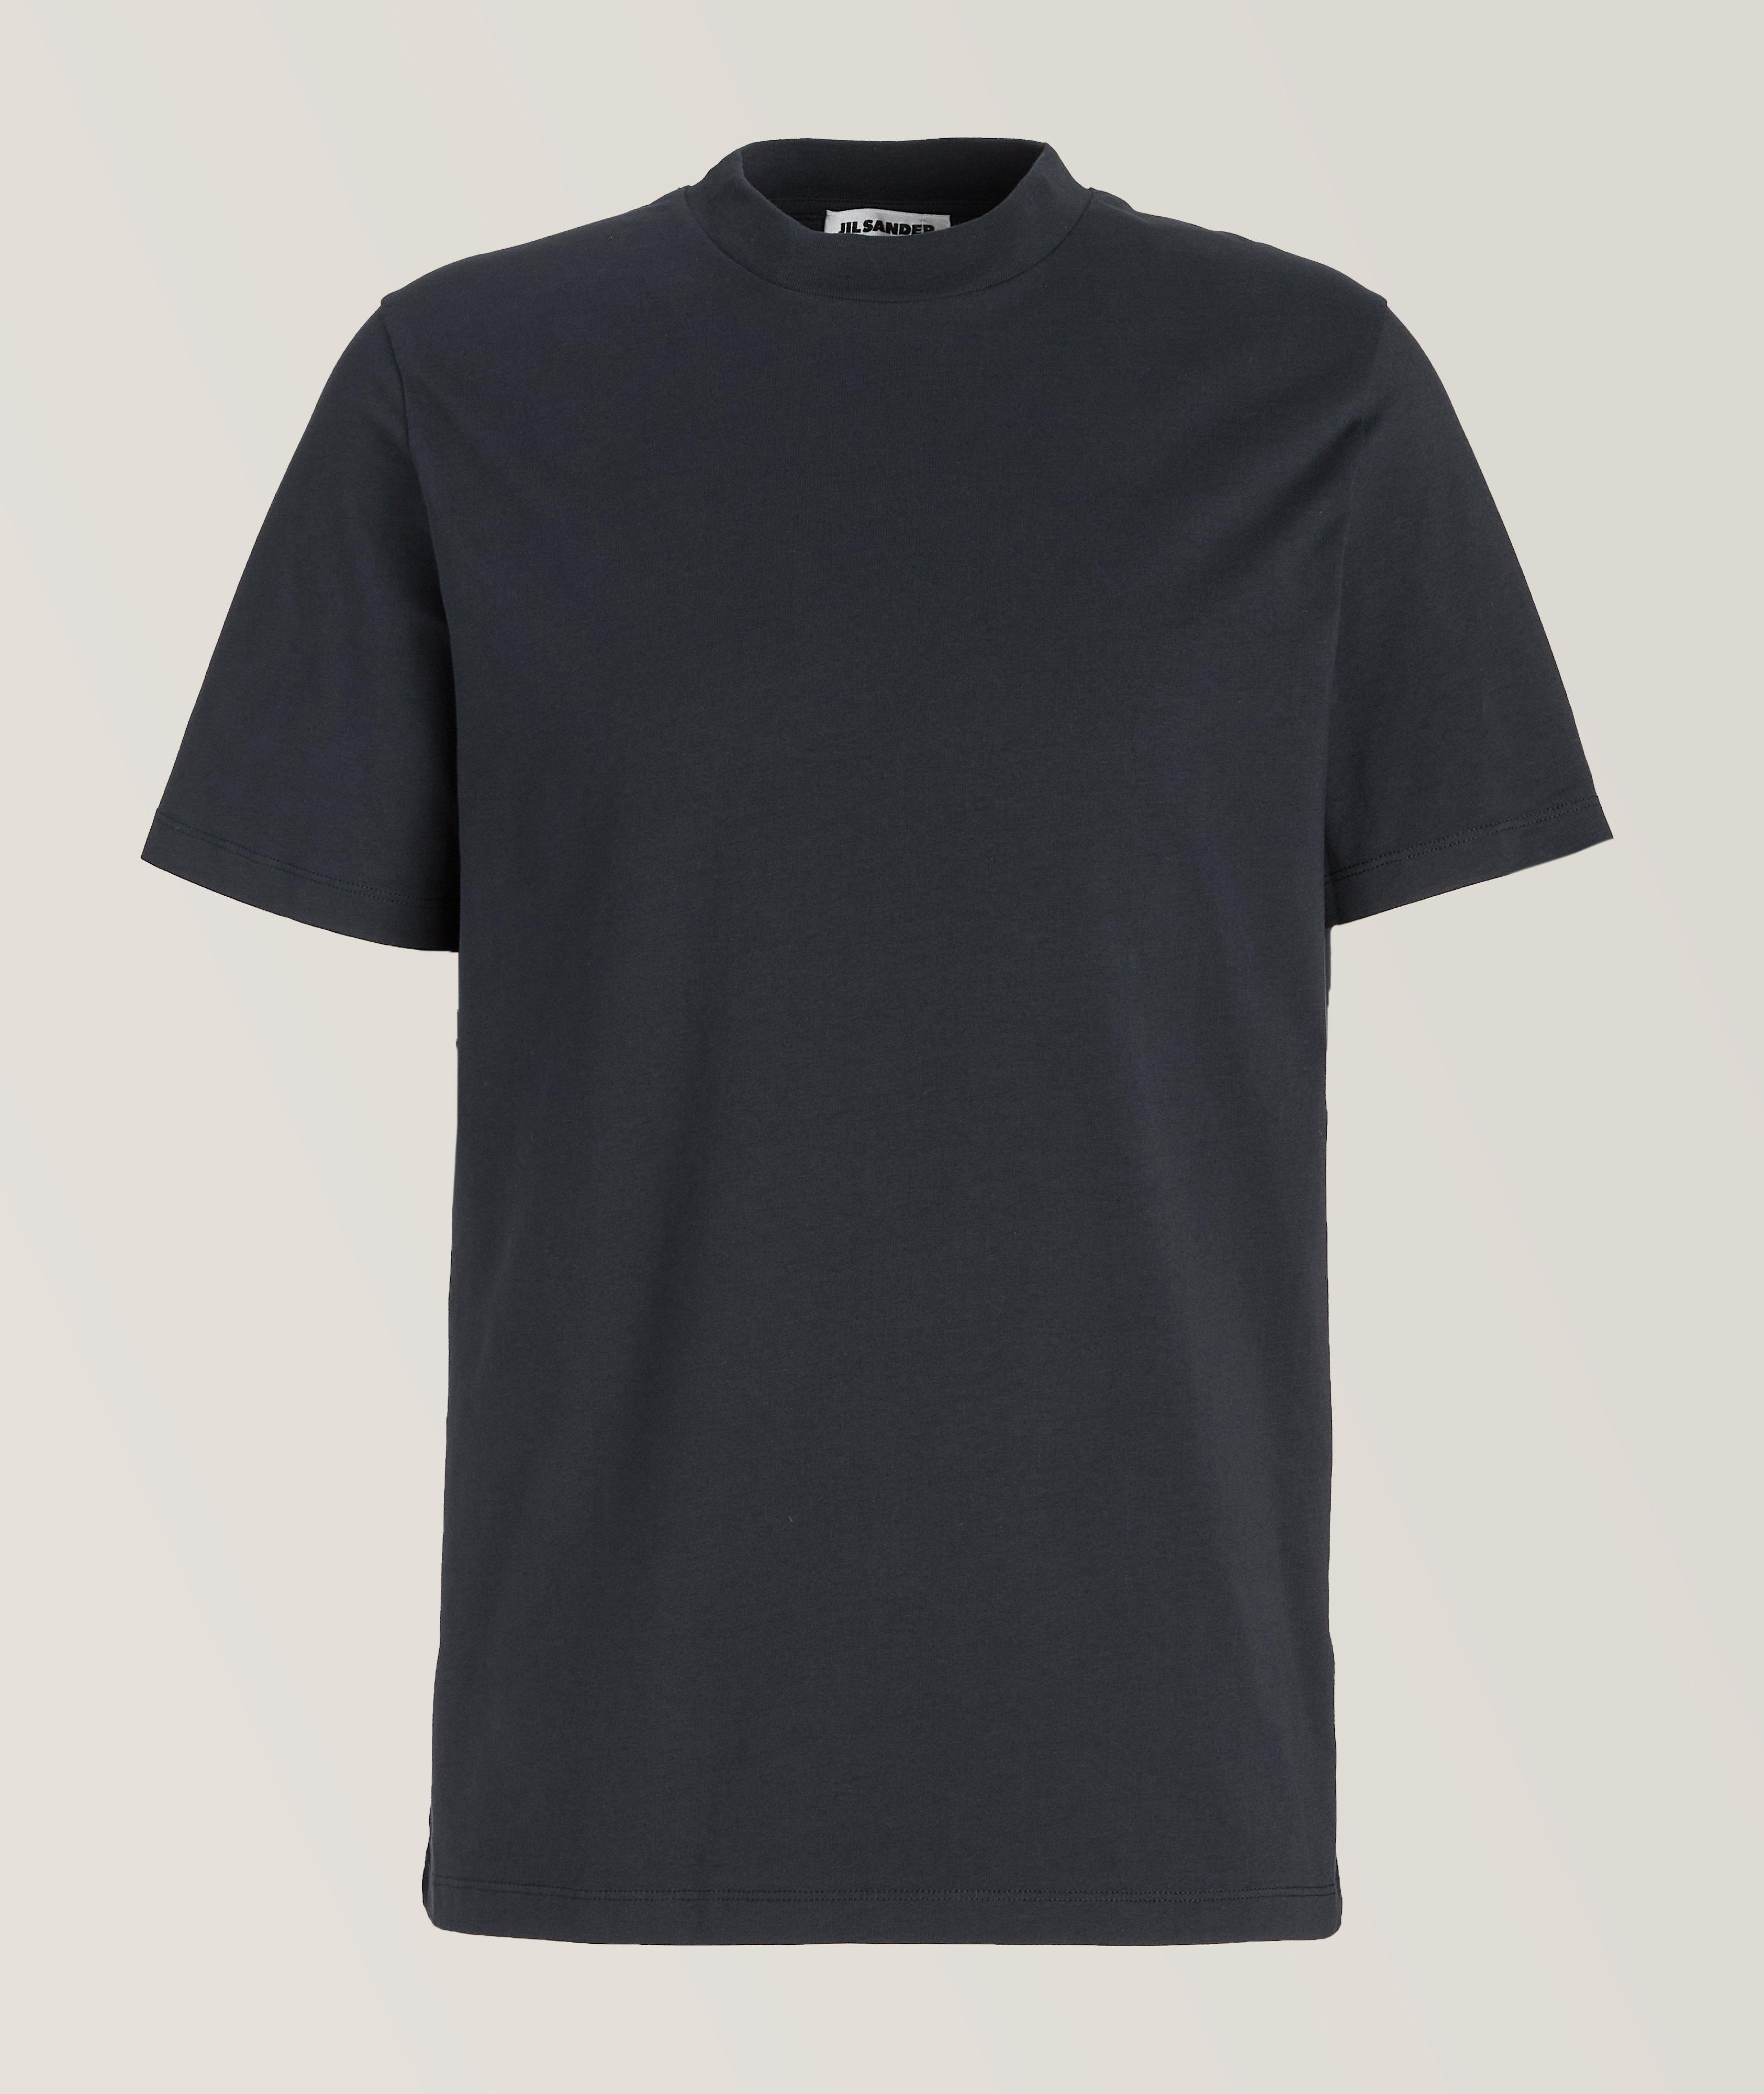 Cotton Basic T-Shirt  image 0